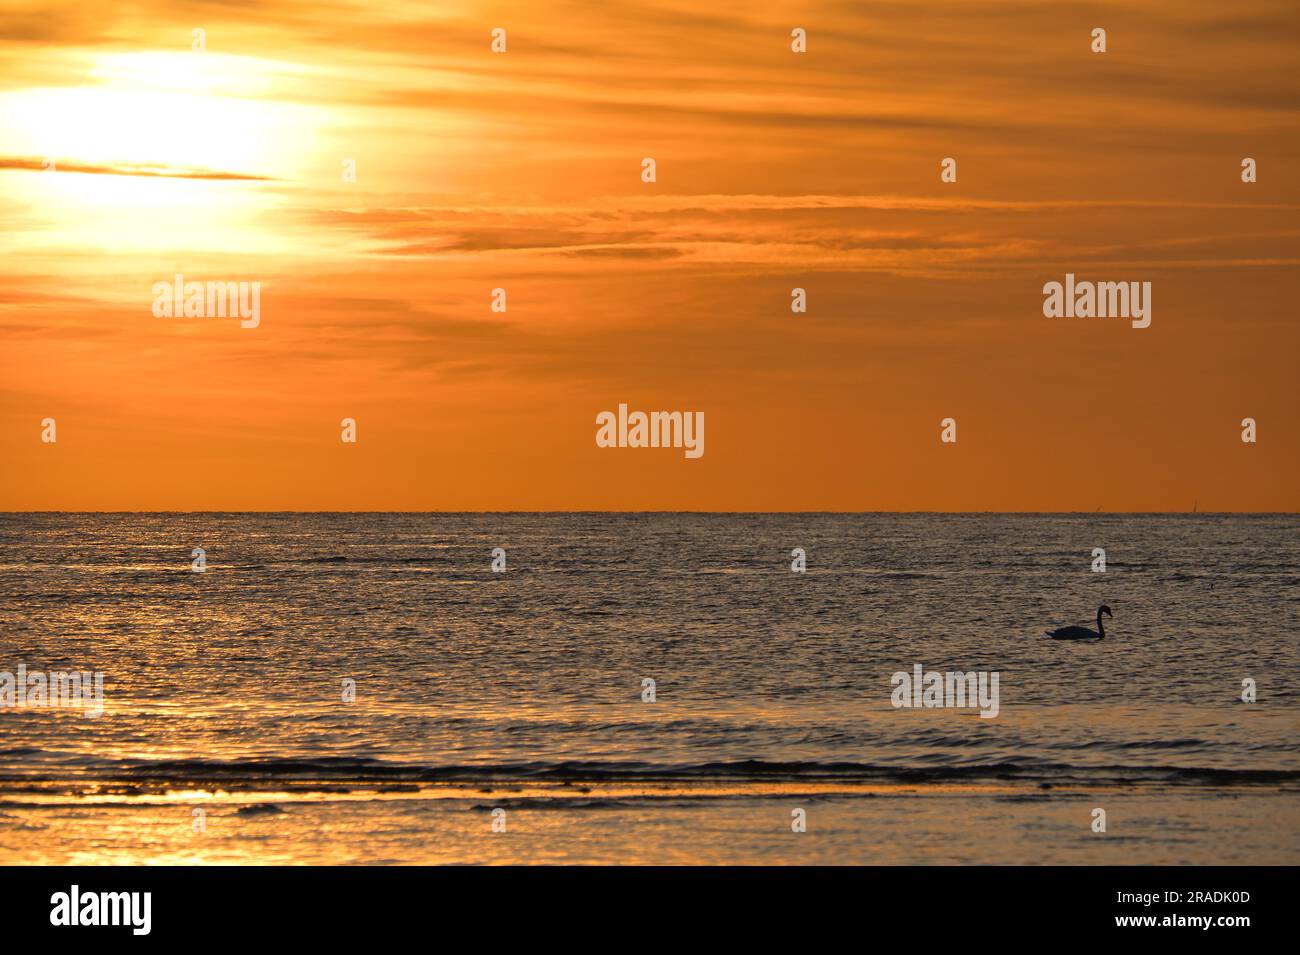 Coucher de soleil, cygnes nageant dans la mer illuminée. Ondes lumineuses. Île de Poel sur la mer Baltique. Photo de la nature de la côte Banque D'Images